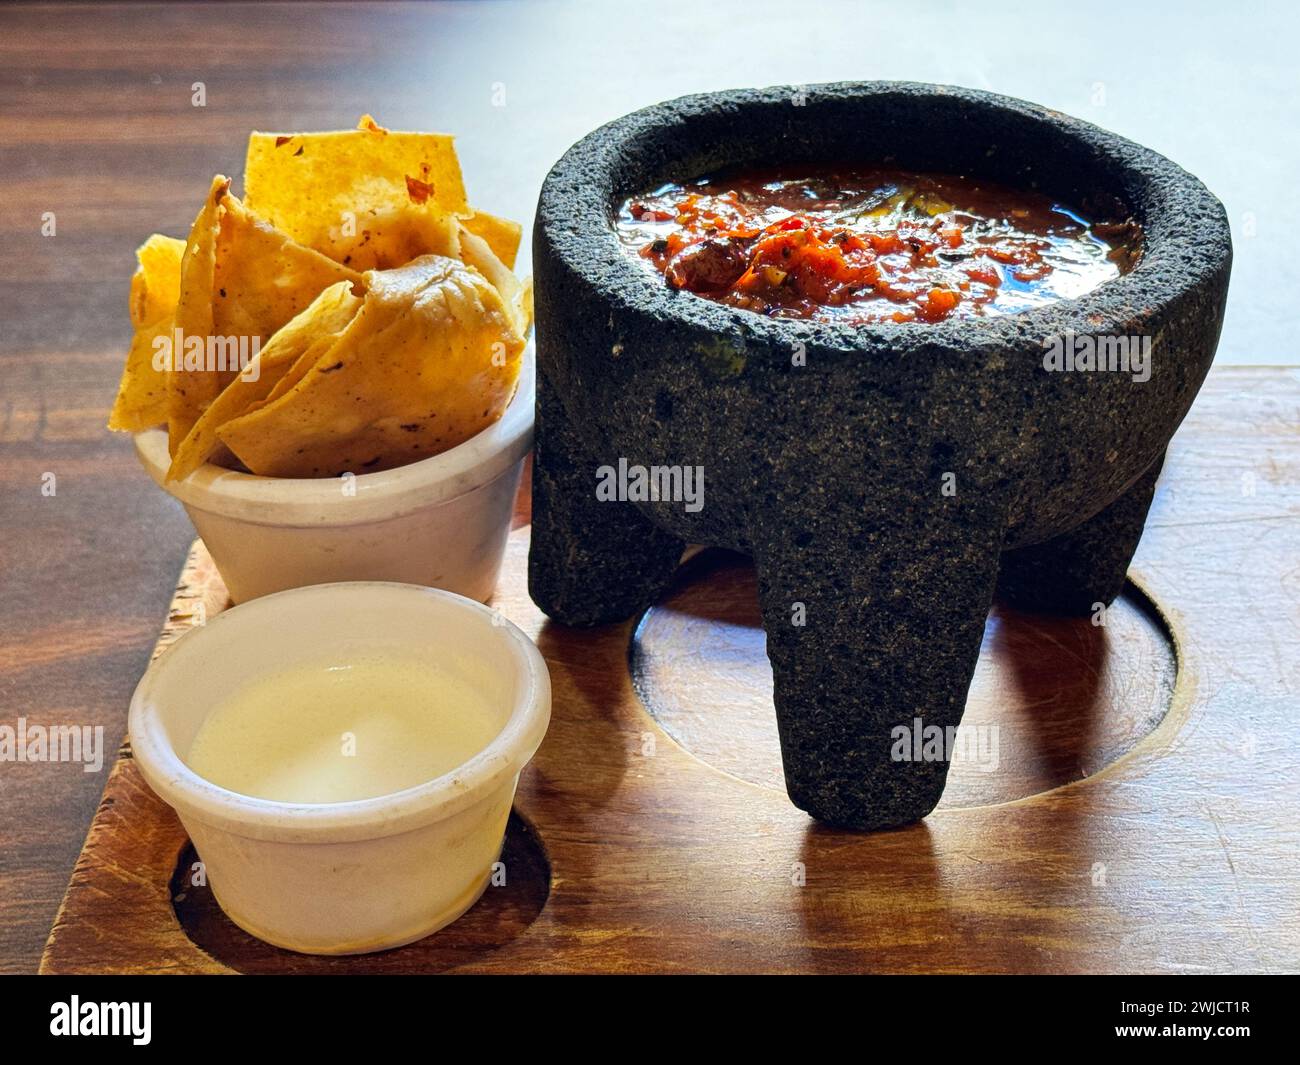 Traditionelle mexikanische Molcajete-Schüssel gefüllt mit frischer Salsa, begleitet von knusprigen Maistortilla-Chips und einer Seite cremiger Sauce, servierfertig. Stockfoto